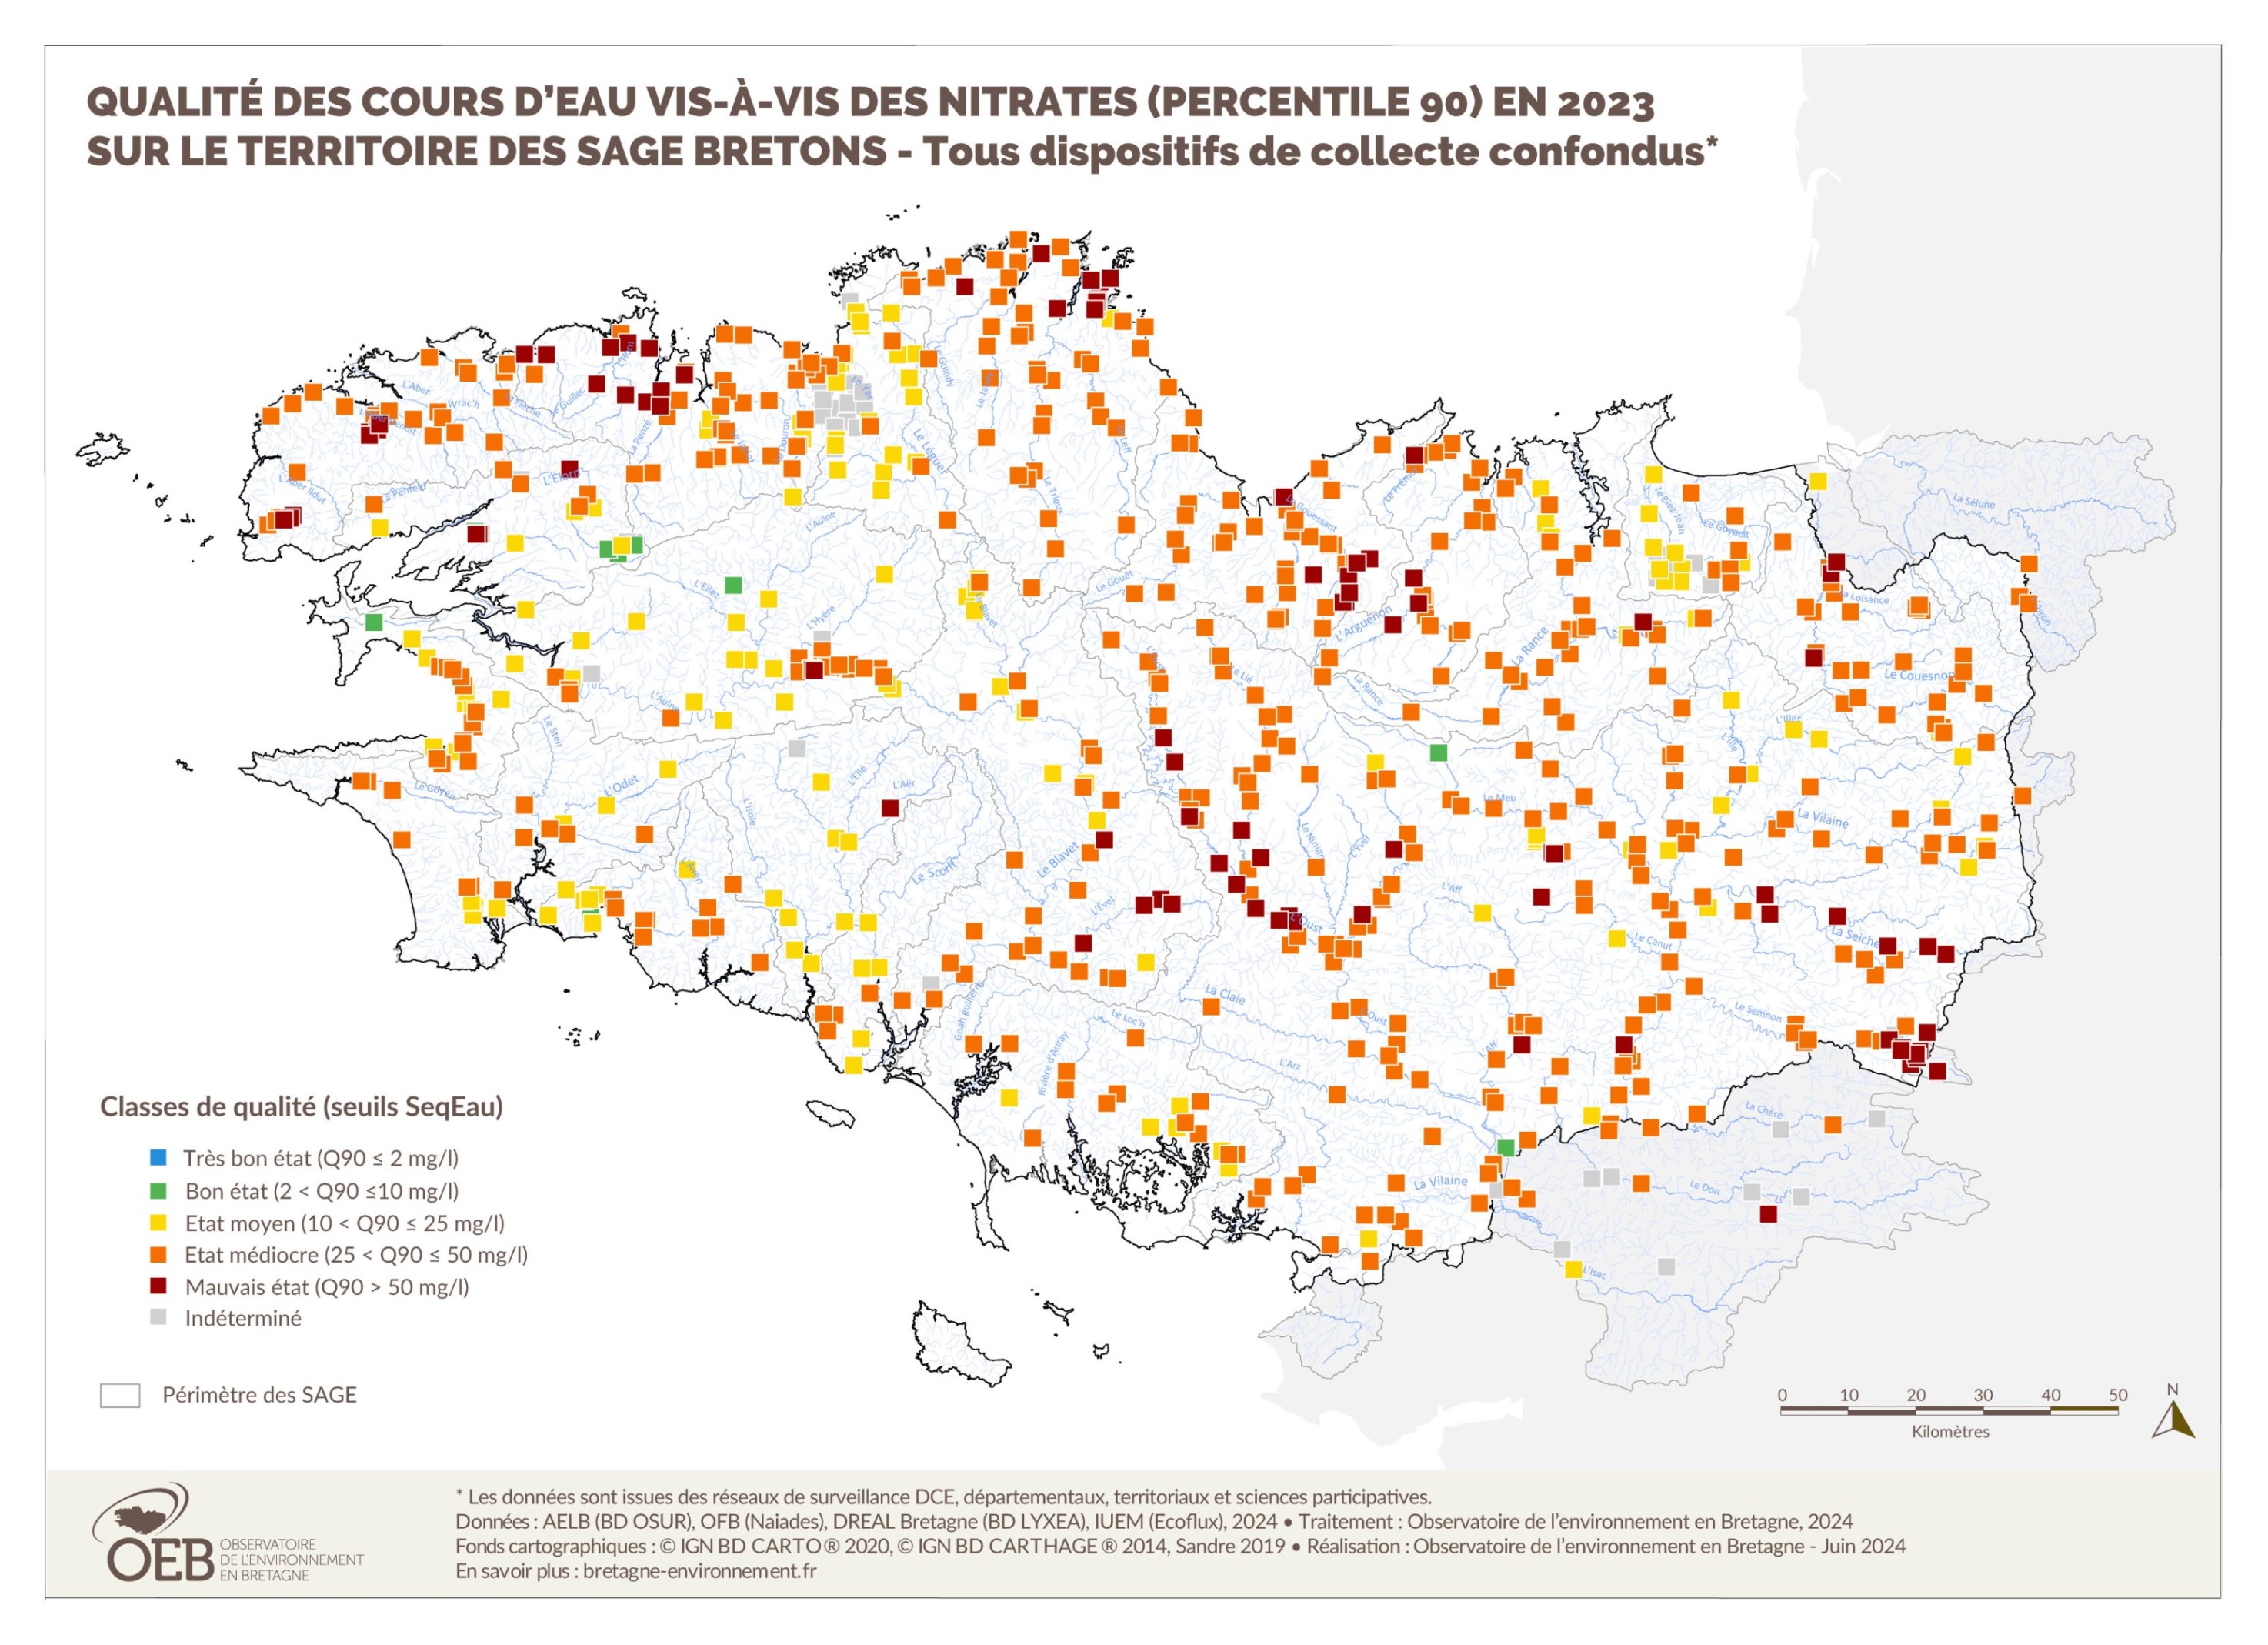 Qualité des cours d'eau bretons vis-à-vis des nitrates (Q90) en 2023